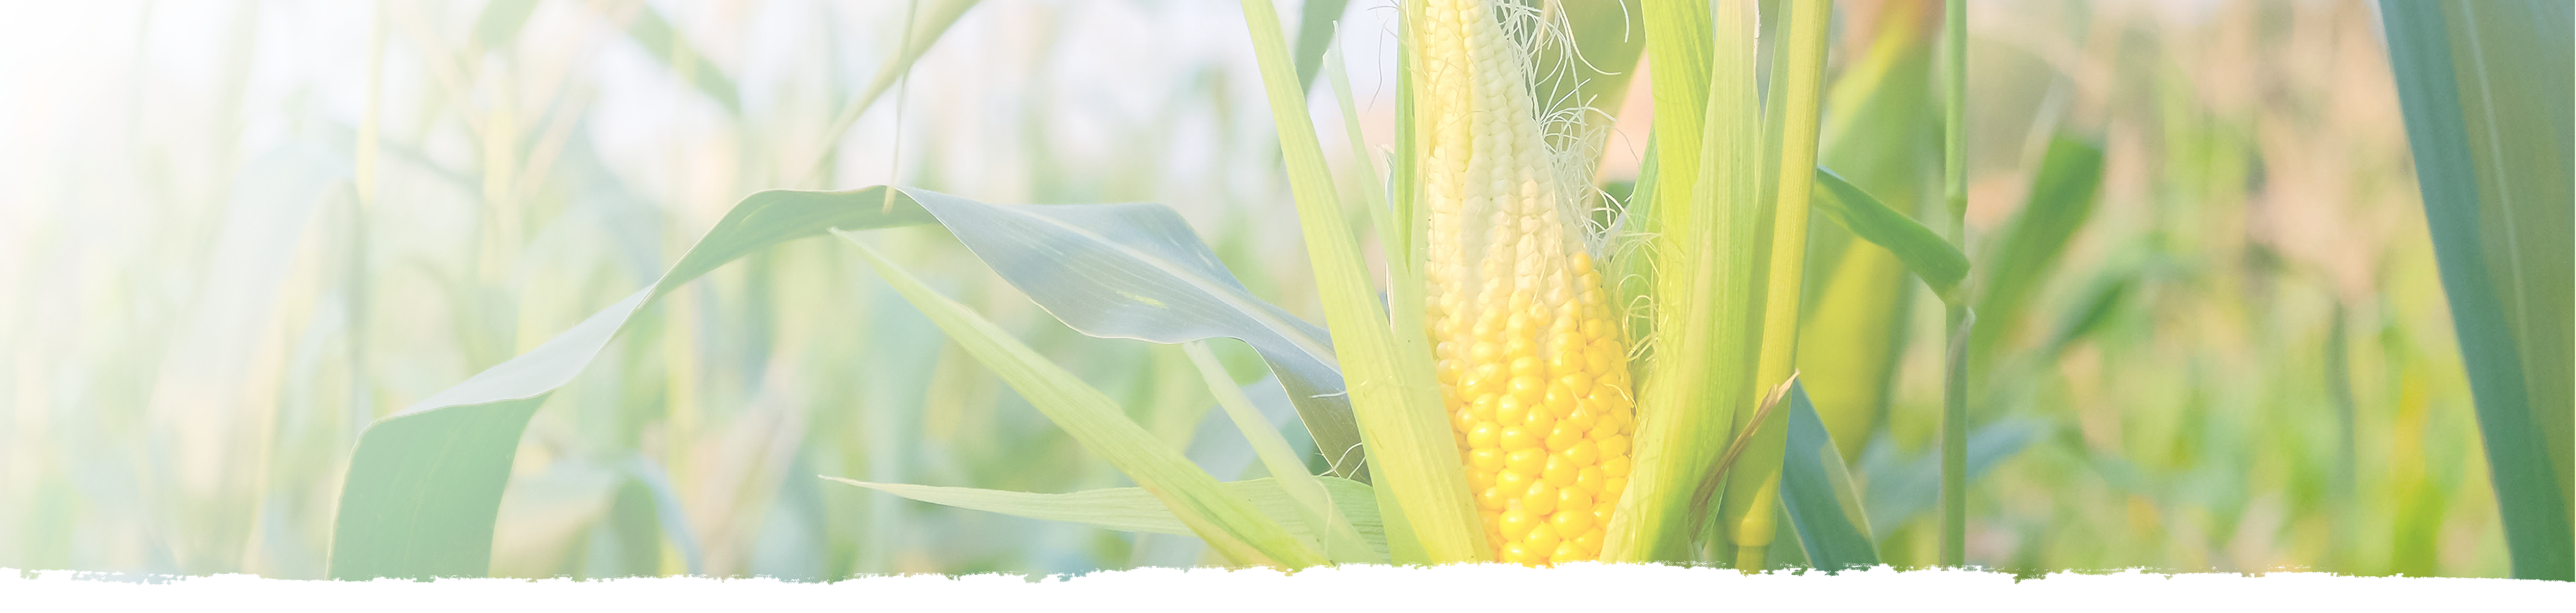 Maize in a cornfield